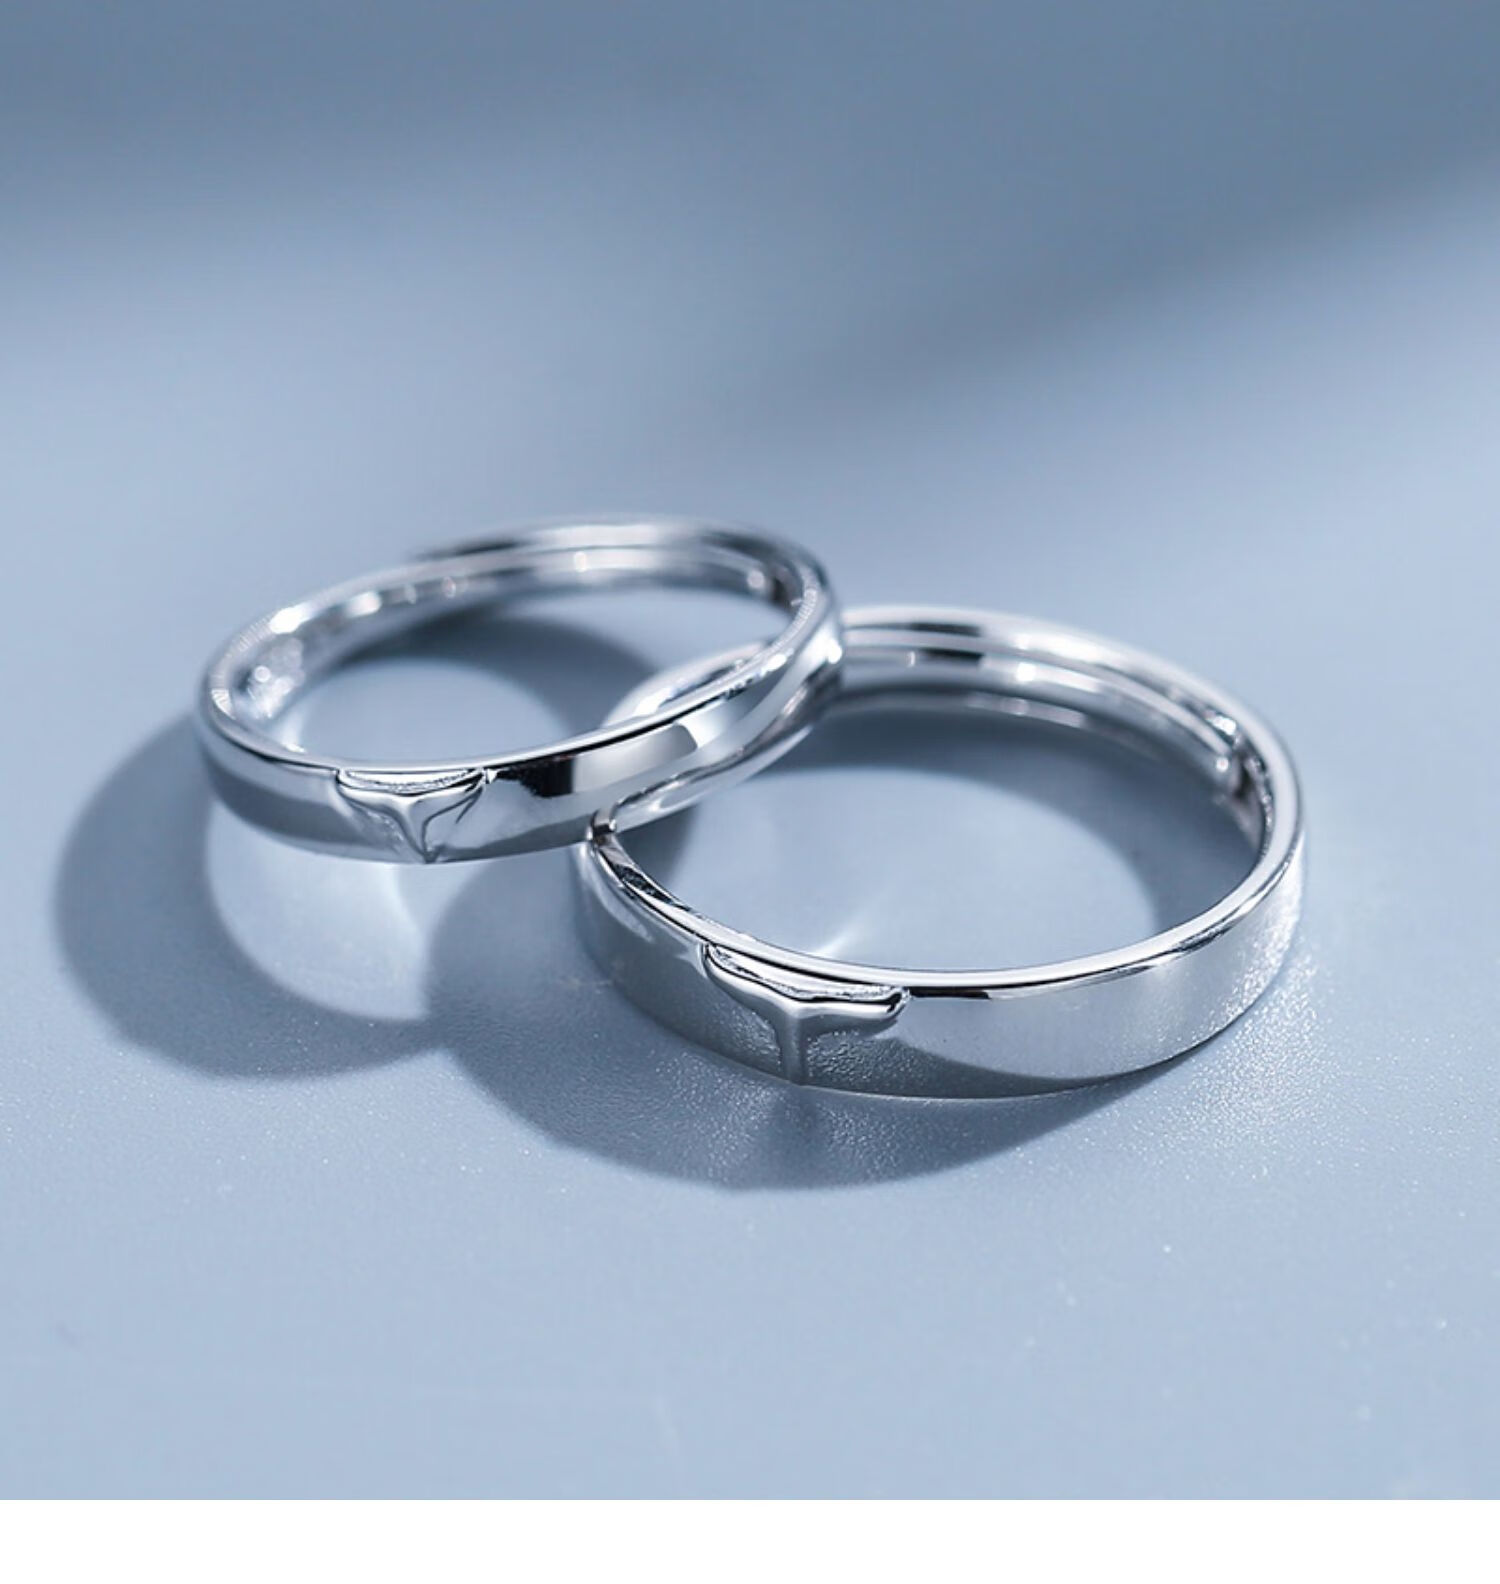 贡弗情侣对戒一对情侣款银戒指简约小众设计日式轻奢纪念礼物送男朋友